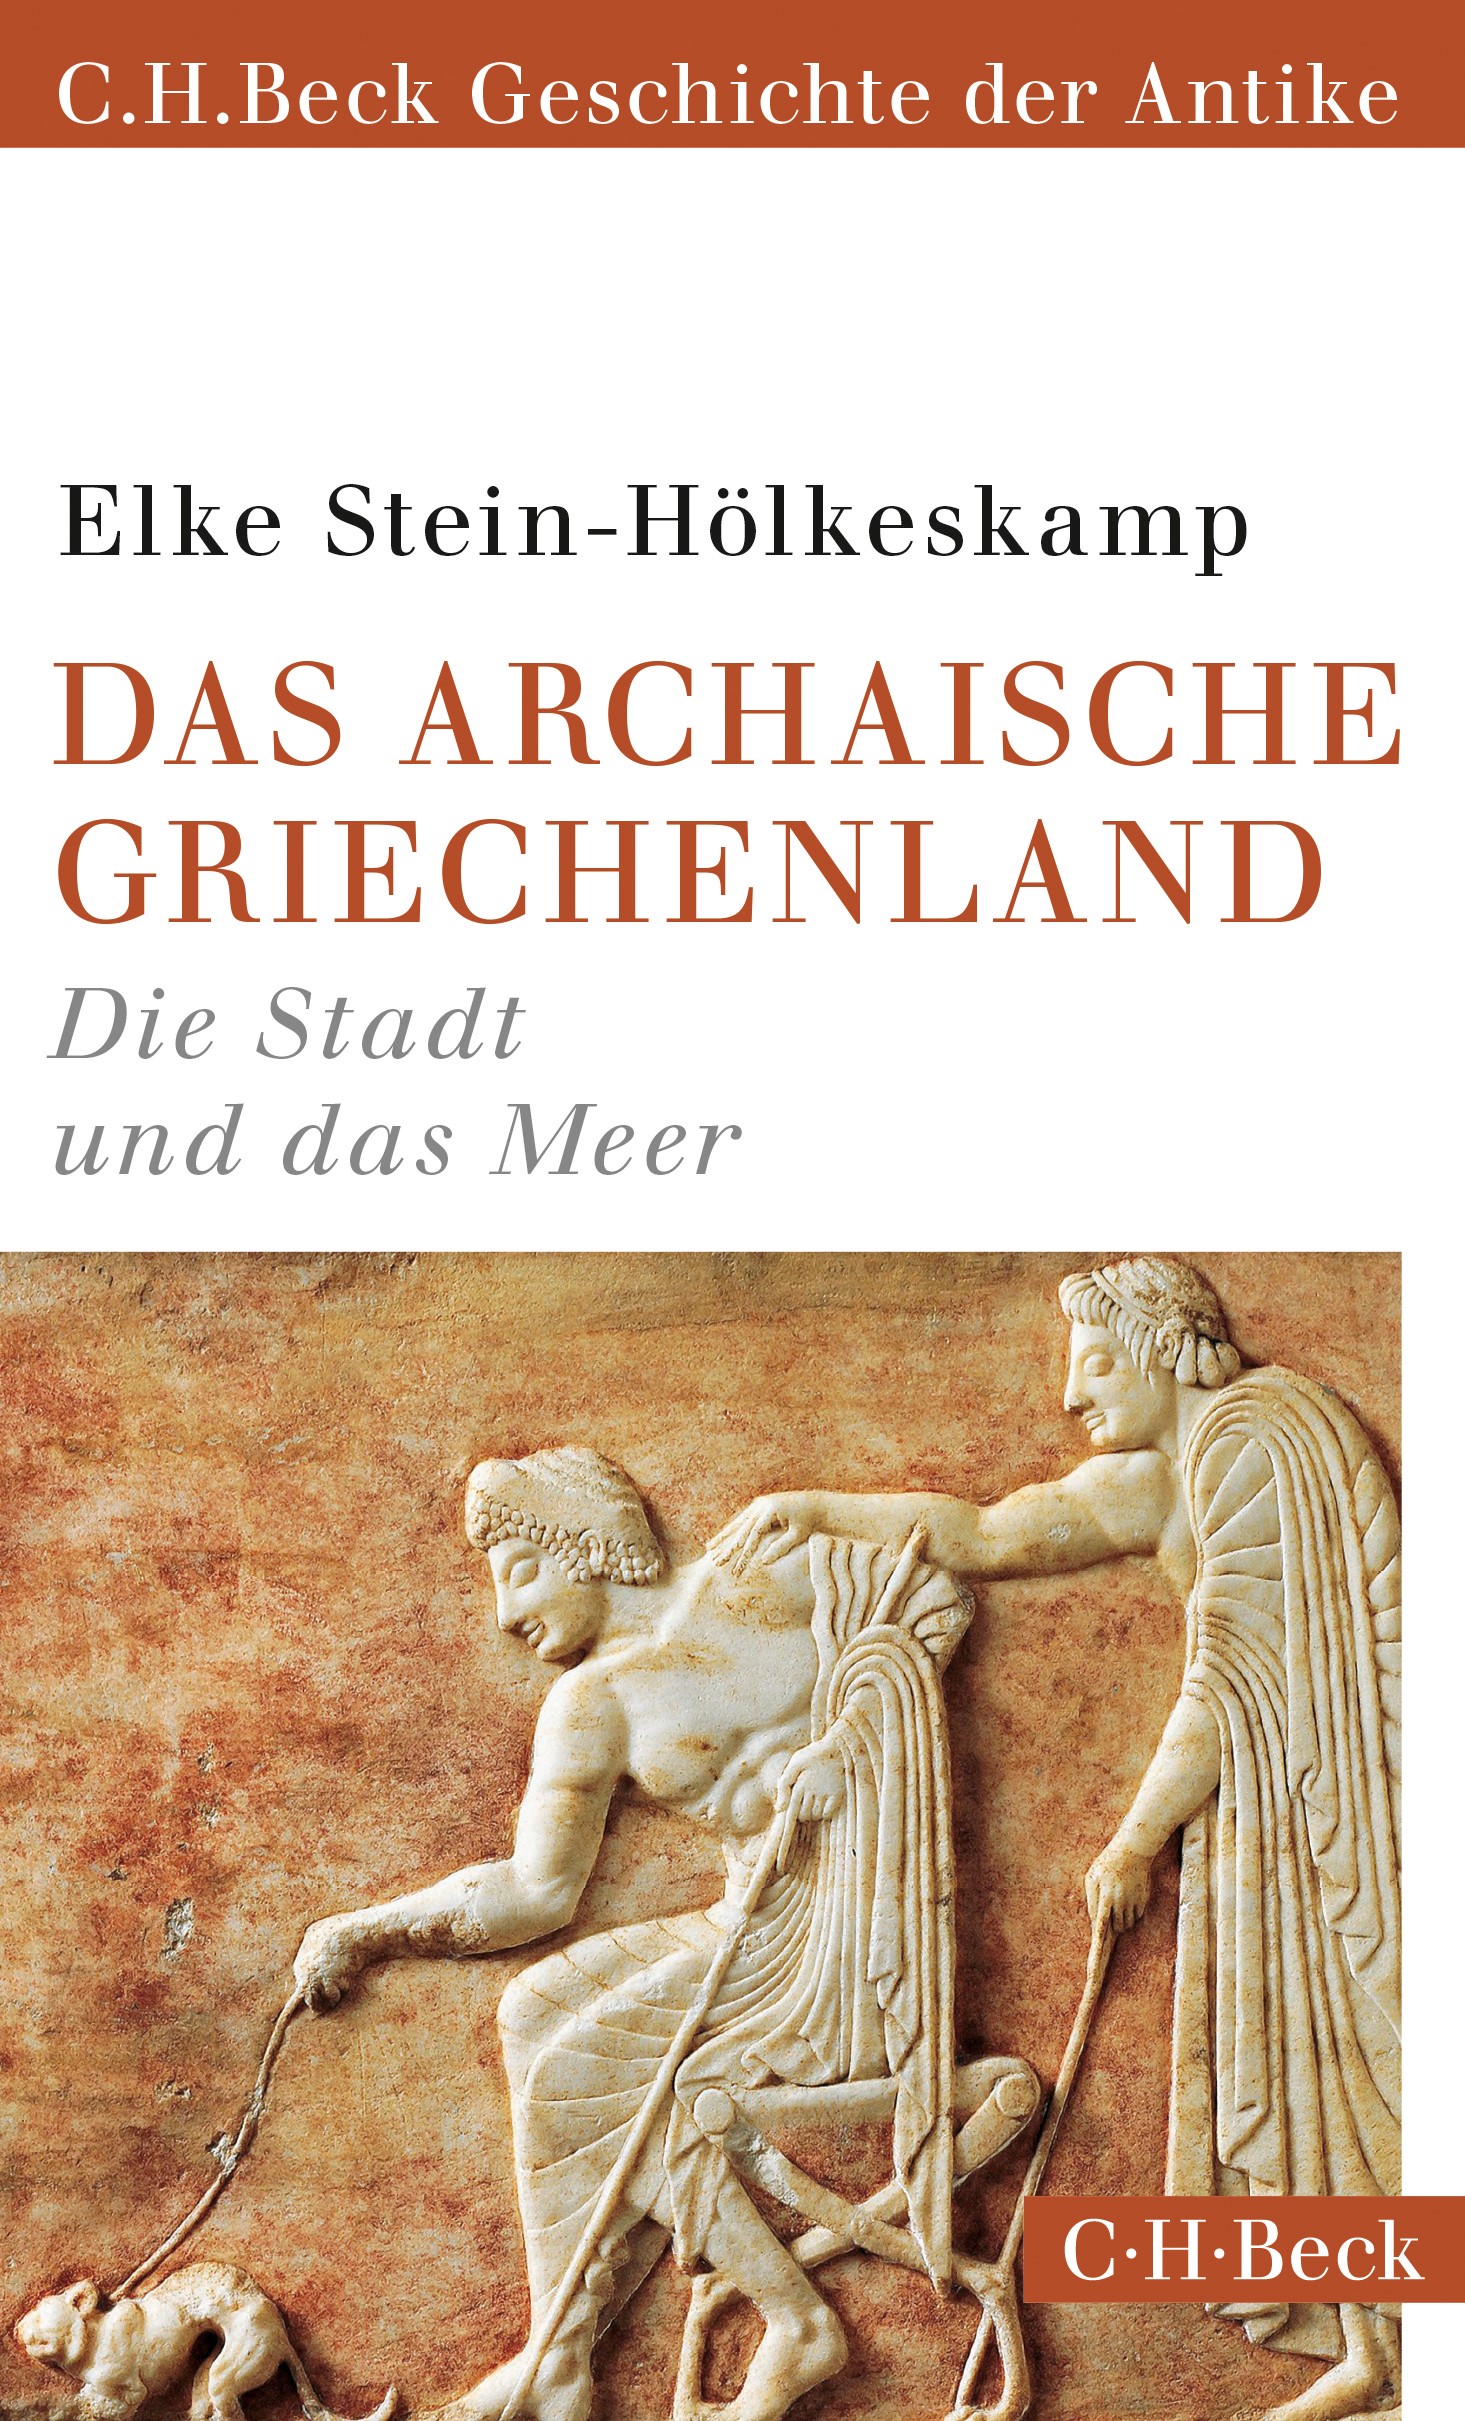 Cover: Stein-Hölkeskamp, Elke, Das archaische Griechenland